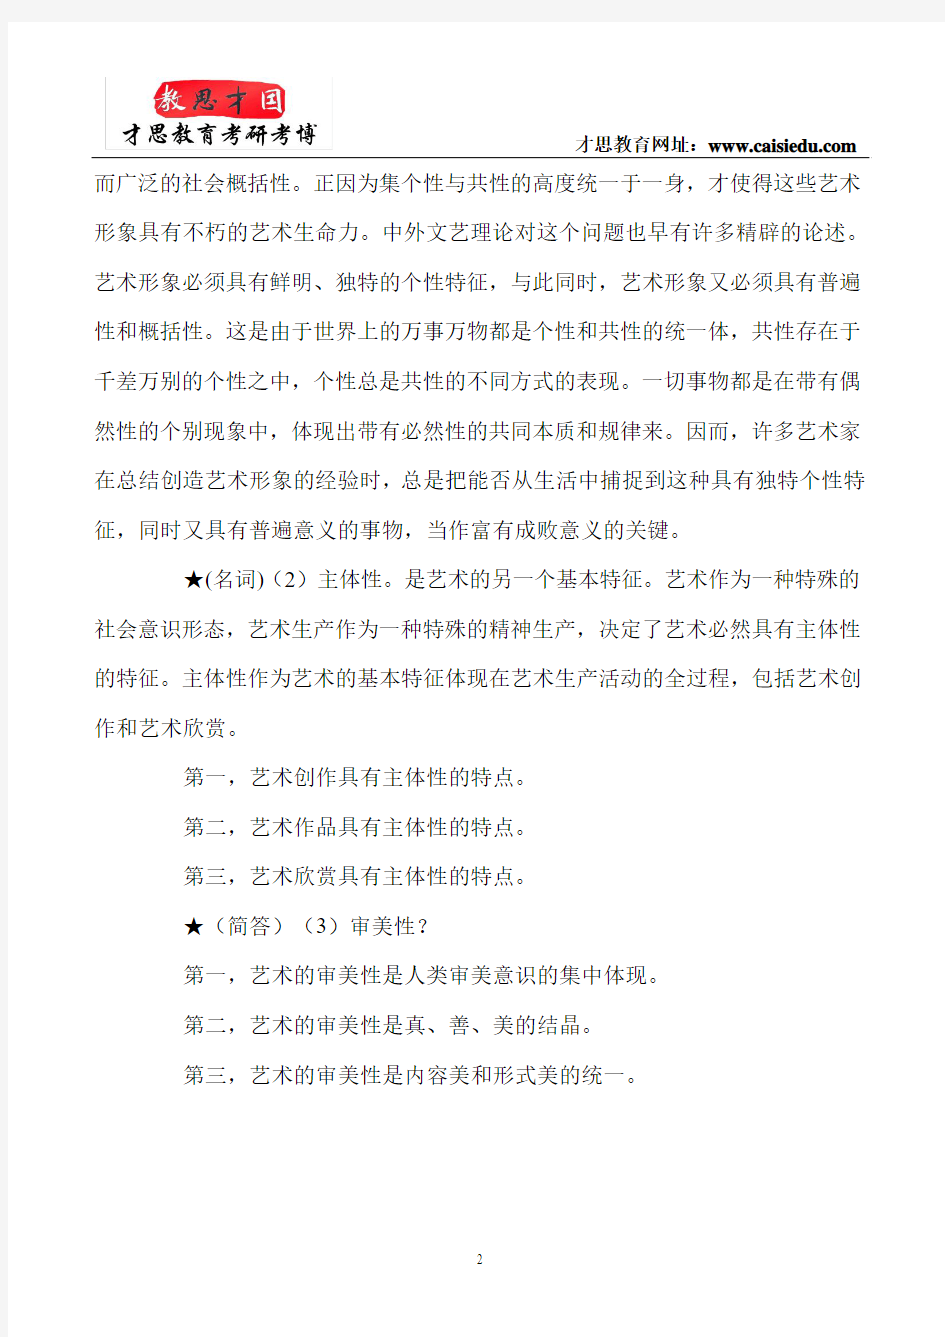 北京电影学院管理系电影市场营销参考书笔记汇总